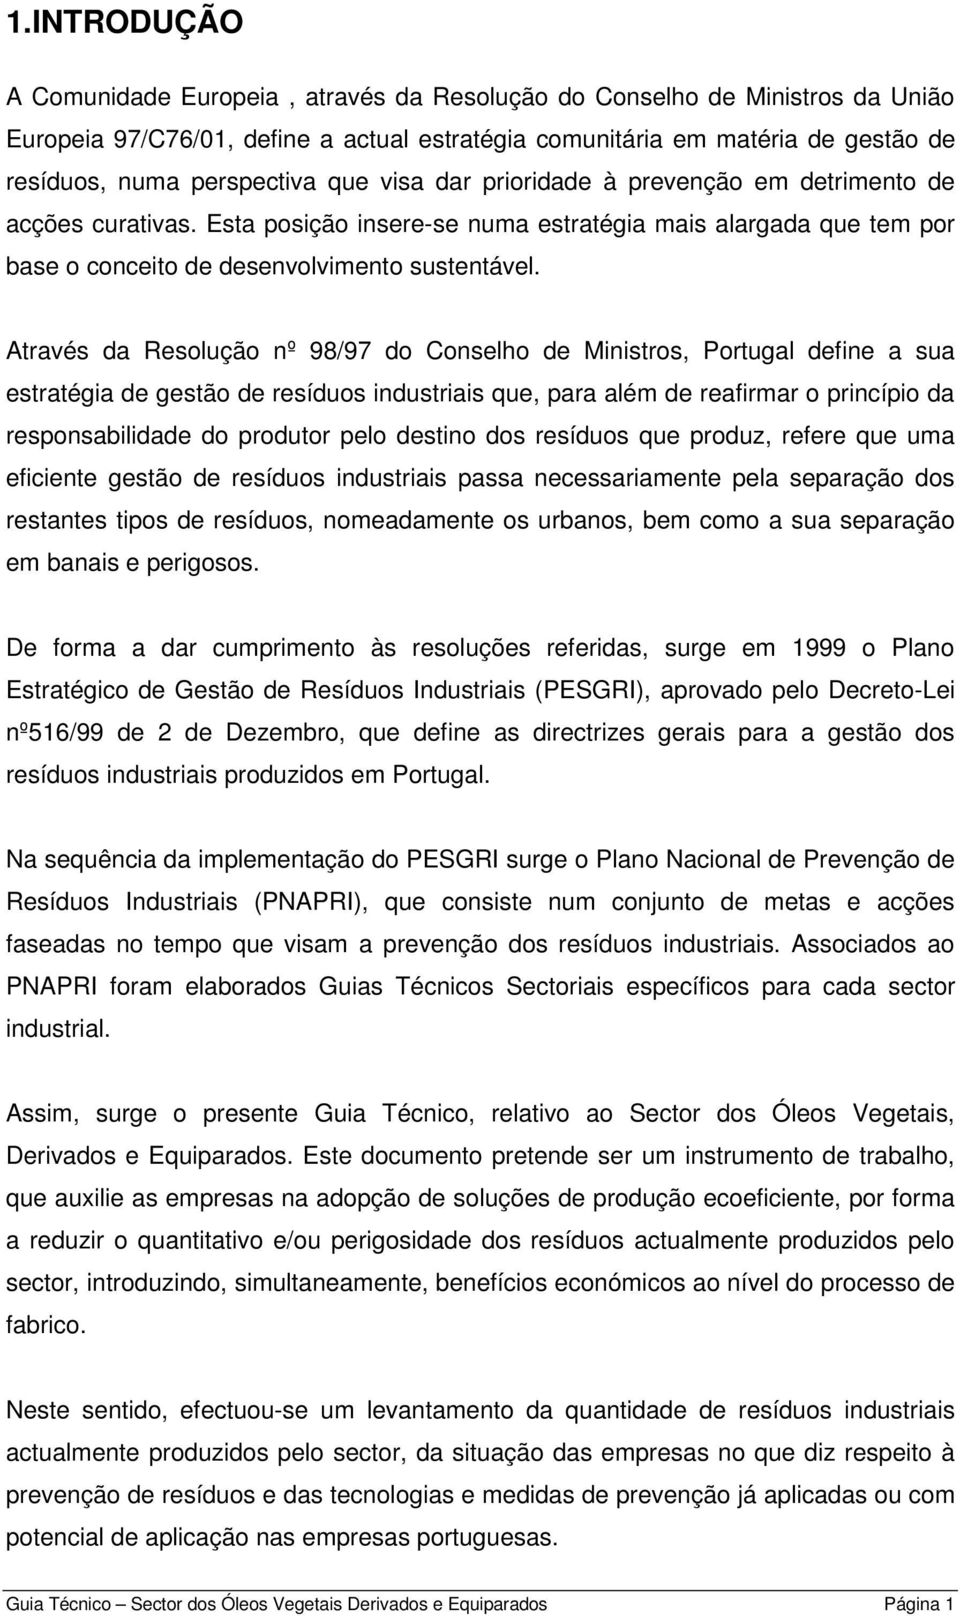 Através da Resolução nº 98/97 do Conselho de Ministros, Portugal define a sua estratégia de gestão de resíduos industriais que, para além de reafirmar o princípio da responsabilidade do produtor pelo